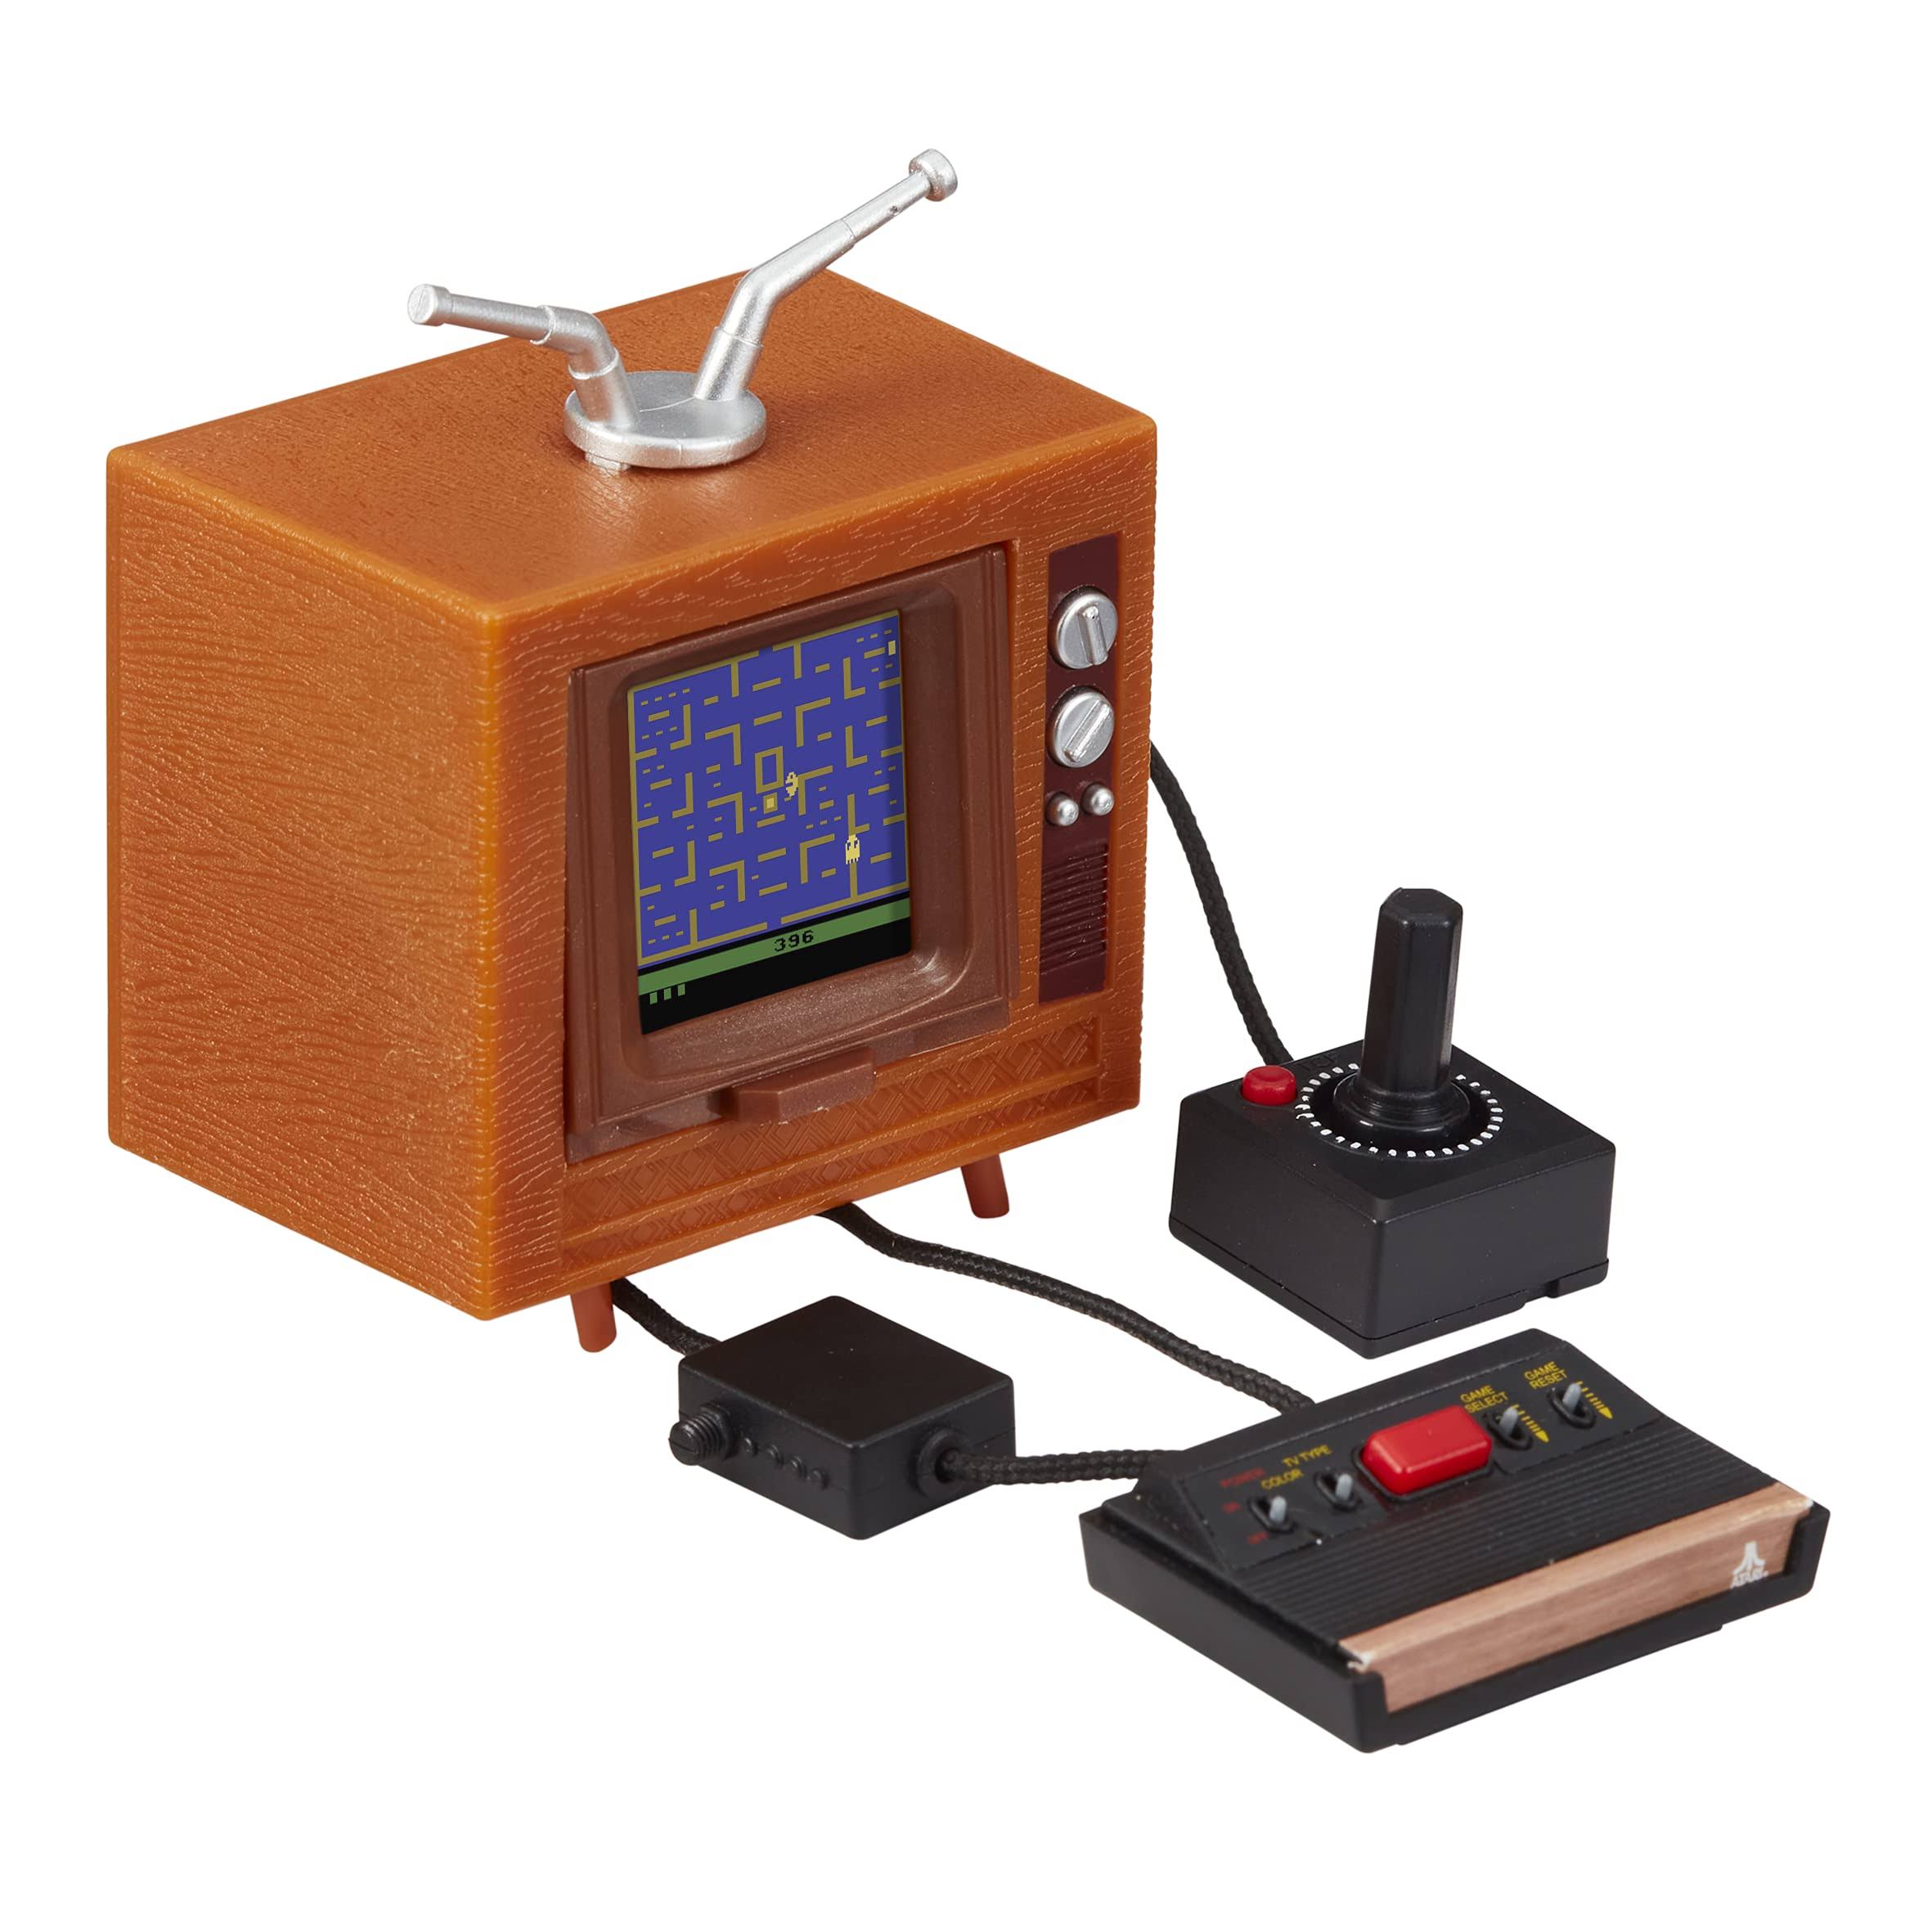 Atari 2600 - Tiny Arcade